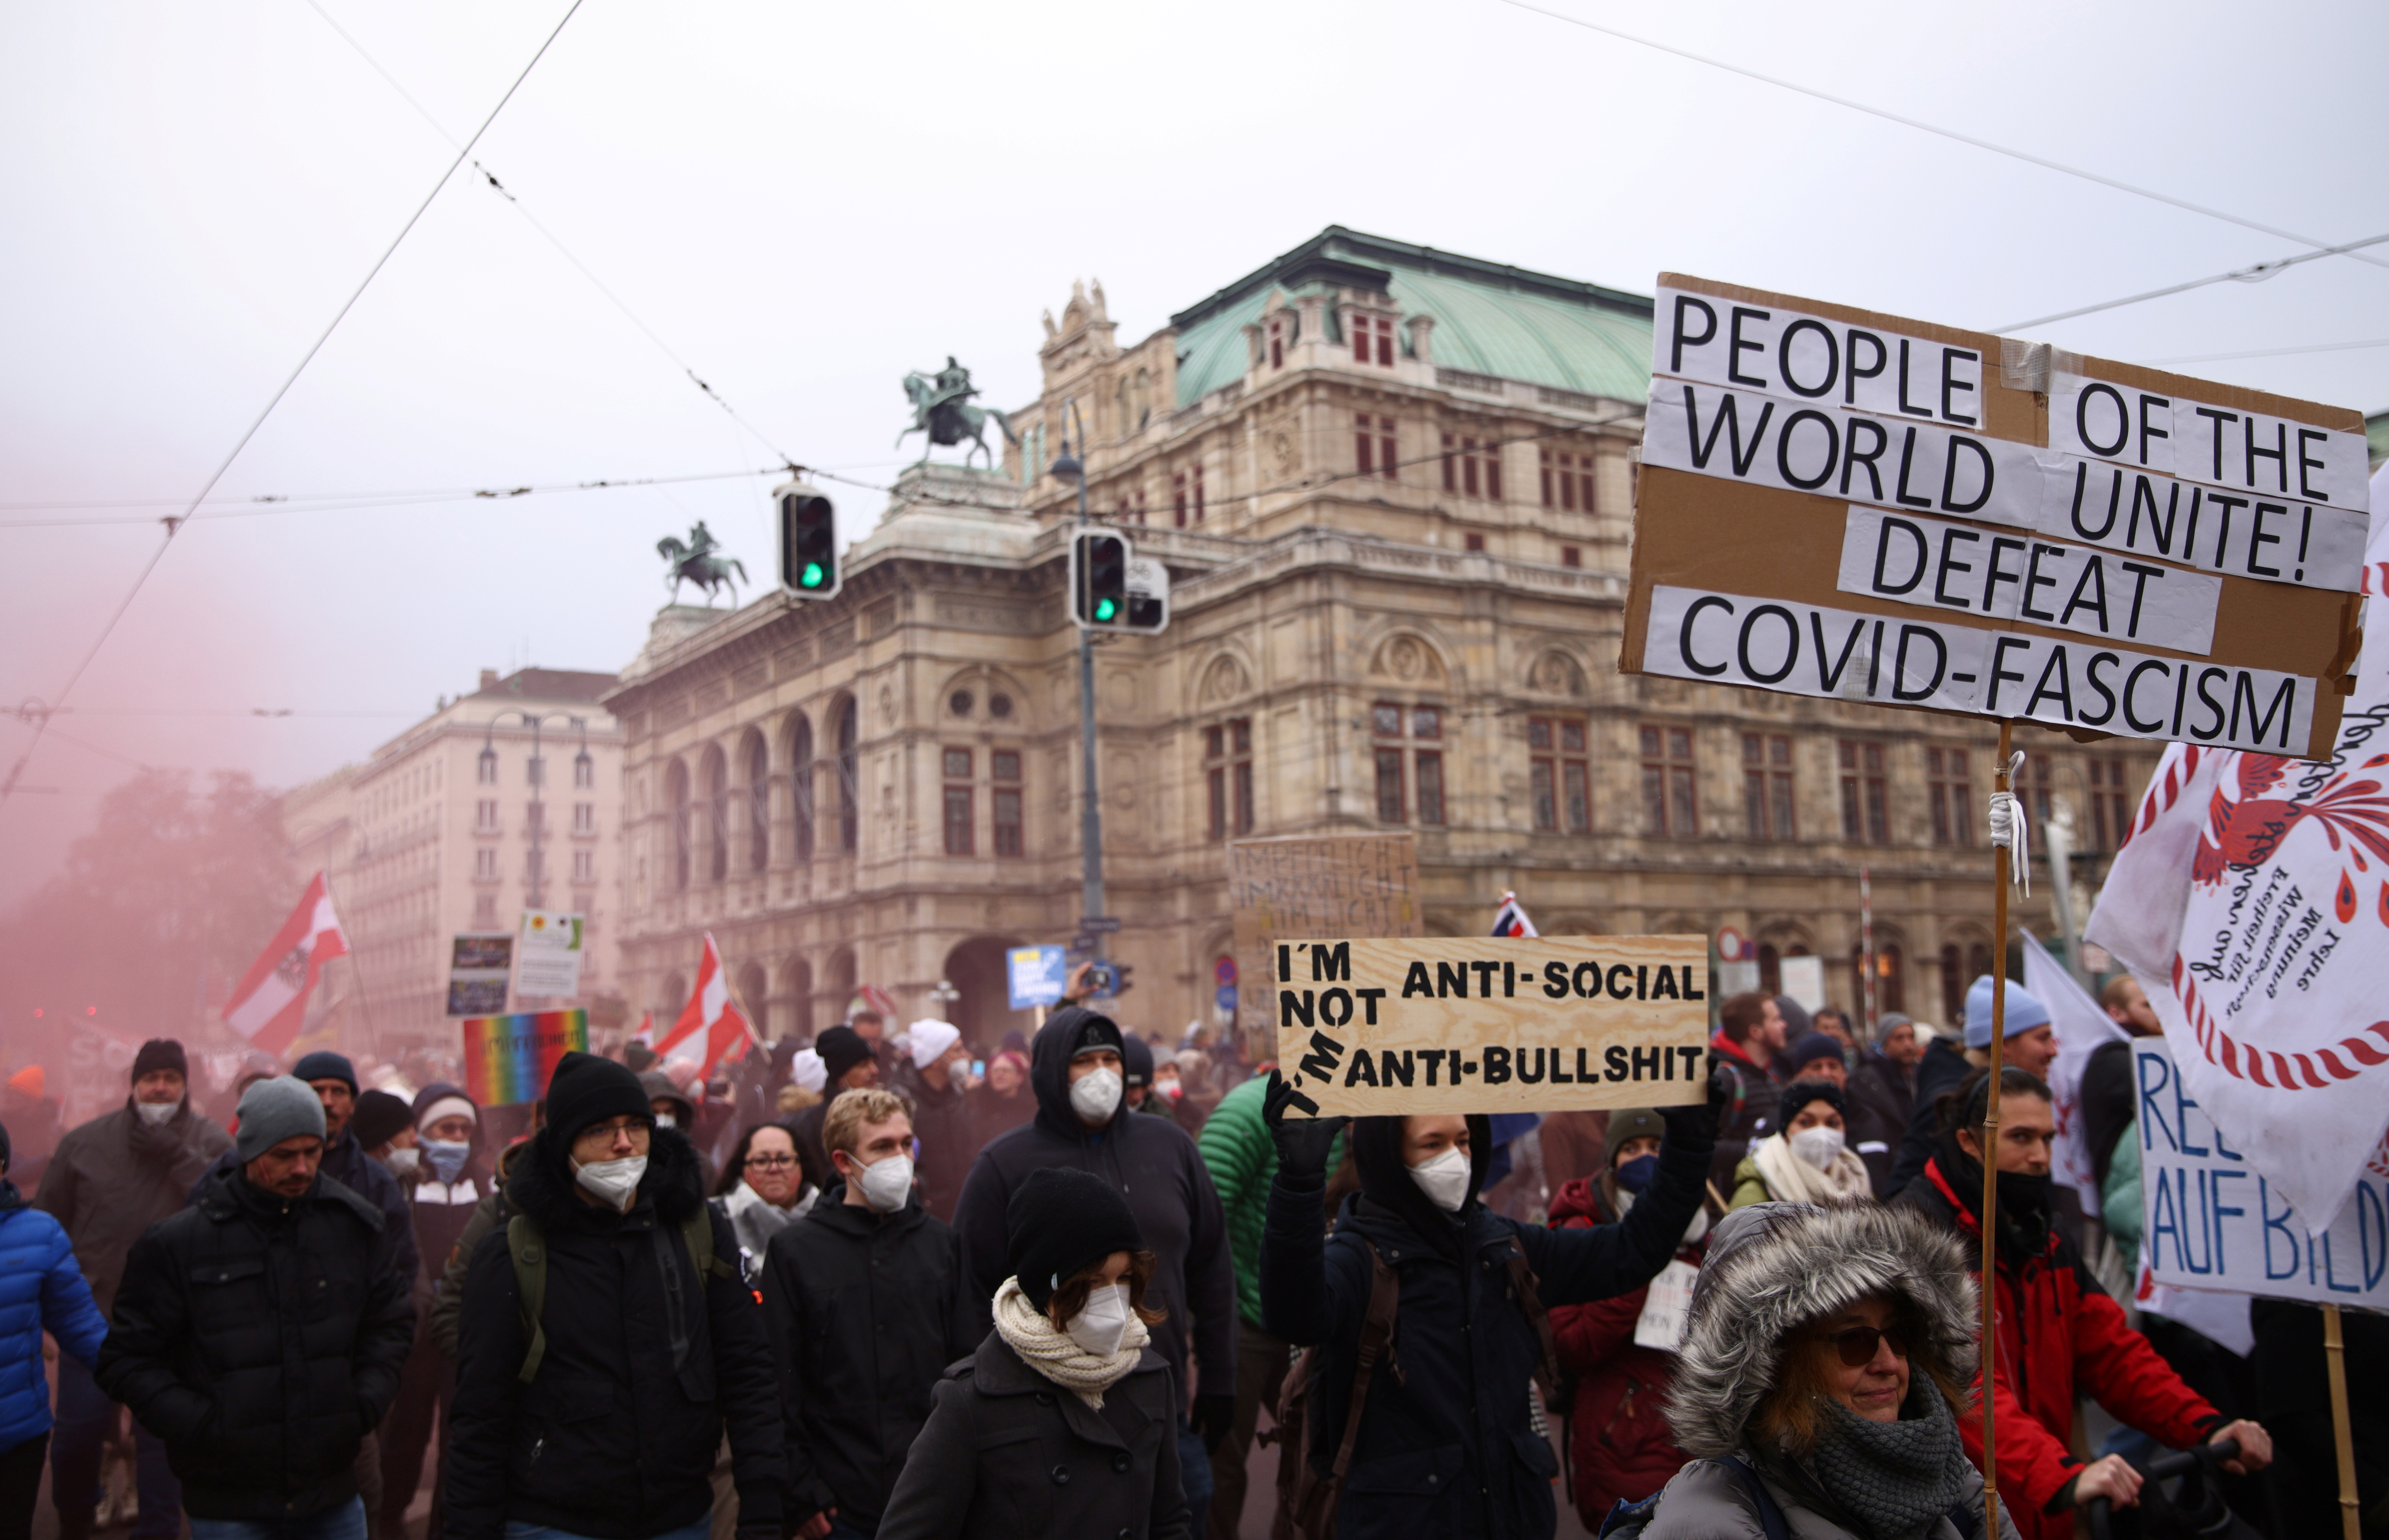 Демонстрантите држат знамиња и плакати додека маршираат пред Државната опера во знак на протест против ограничувањата на коронавирусот (СОВИД-19) и задолжителната вакцинација во Виена, Австрија, 4 декември 2021 година. REUTERS/Лиси Ниснер